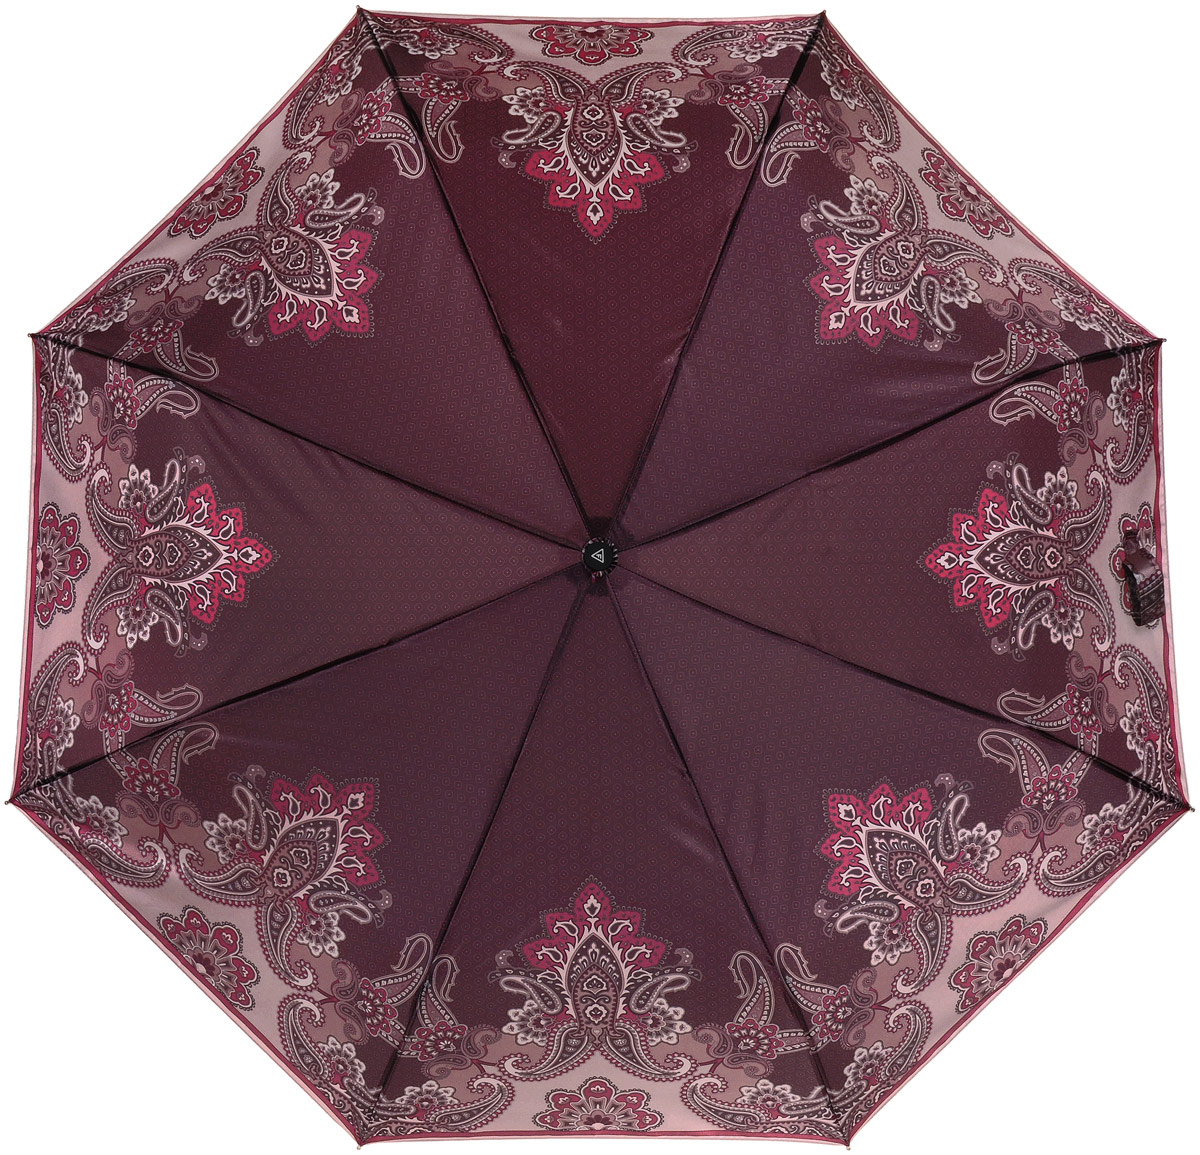 Зонт женский Fabretti, автомат, 3 сложения, цвет: баклажановый, мультиколор. S-17102-6